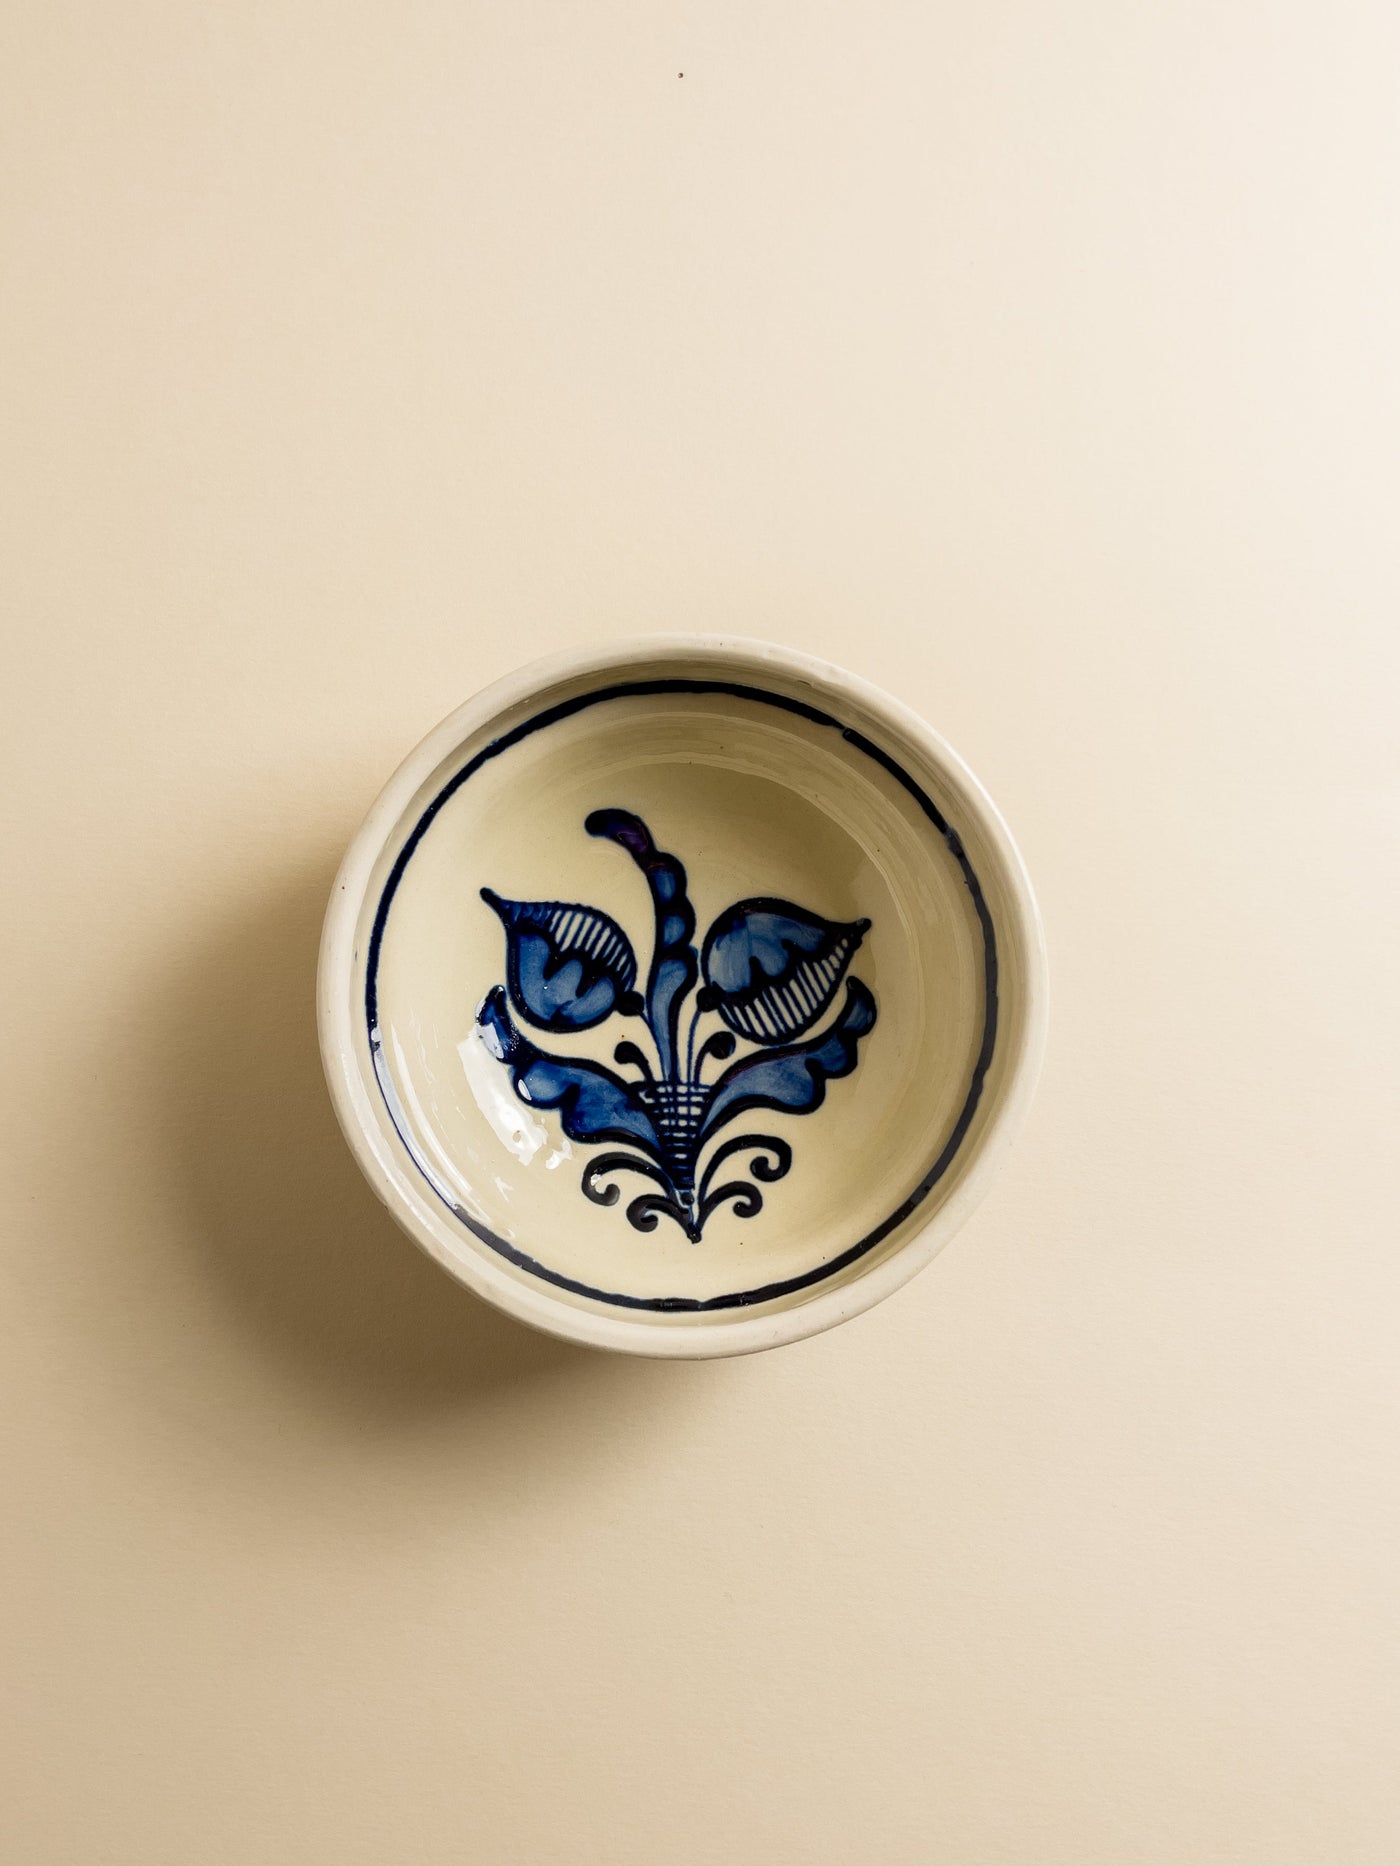 castron-mic-aperitiv-ceramica-corund-lucrata-manual-motiv-floral-boboci-alb-albastru-1